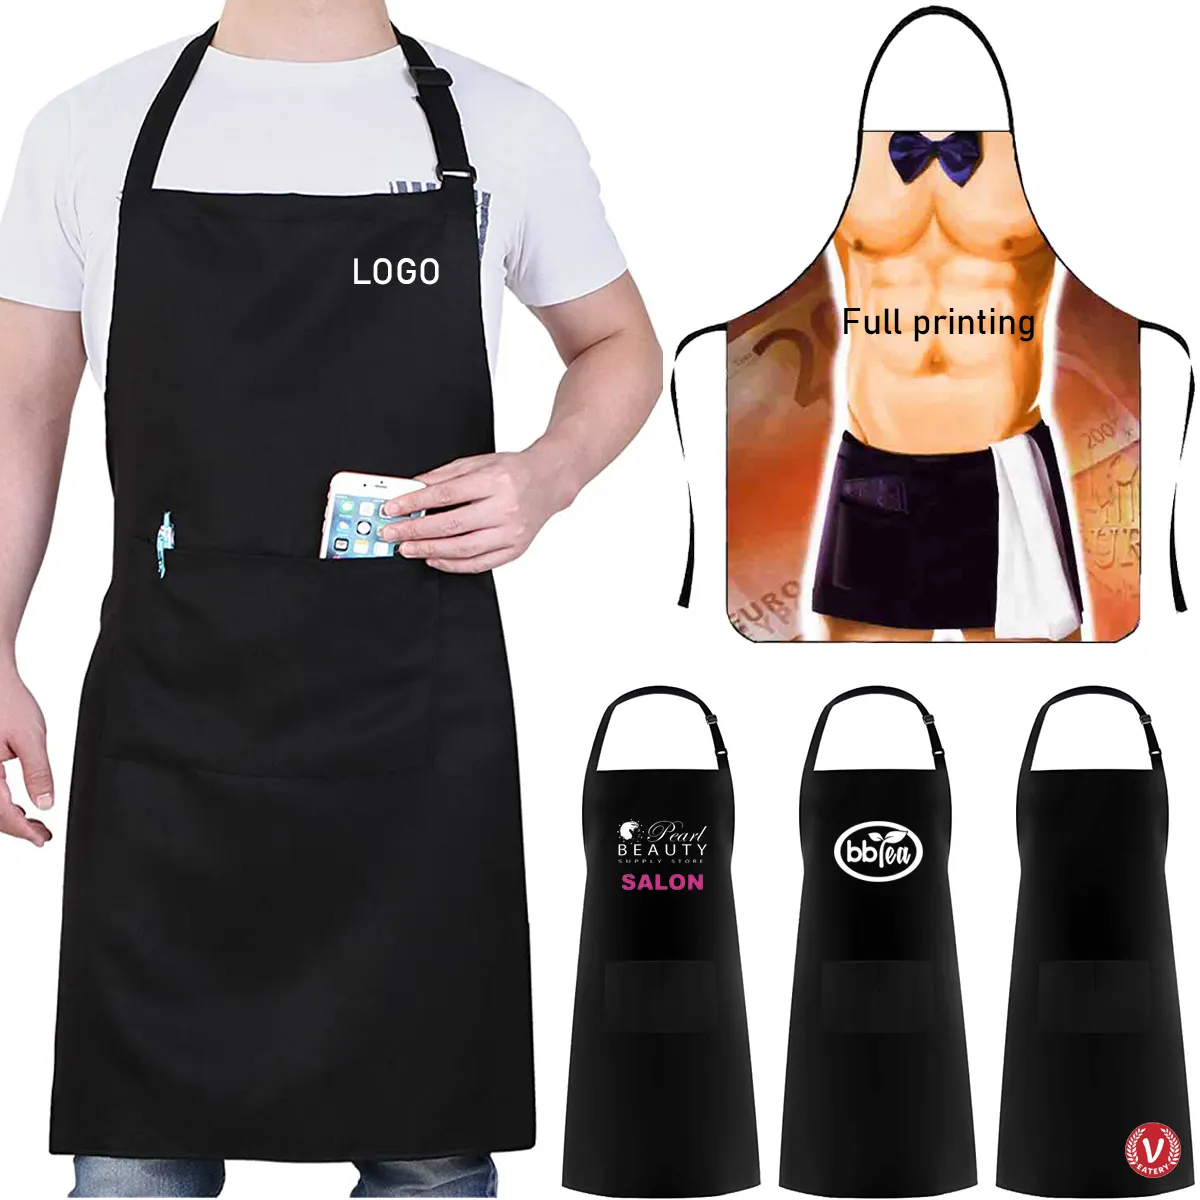 Tablier unisexe en coton noir Logo personnalisé Tablier de conception d'impression complète avec poche Bavoir réglable imperméable pour tablier de barbecue de cuisine